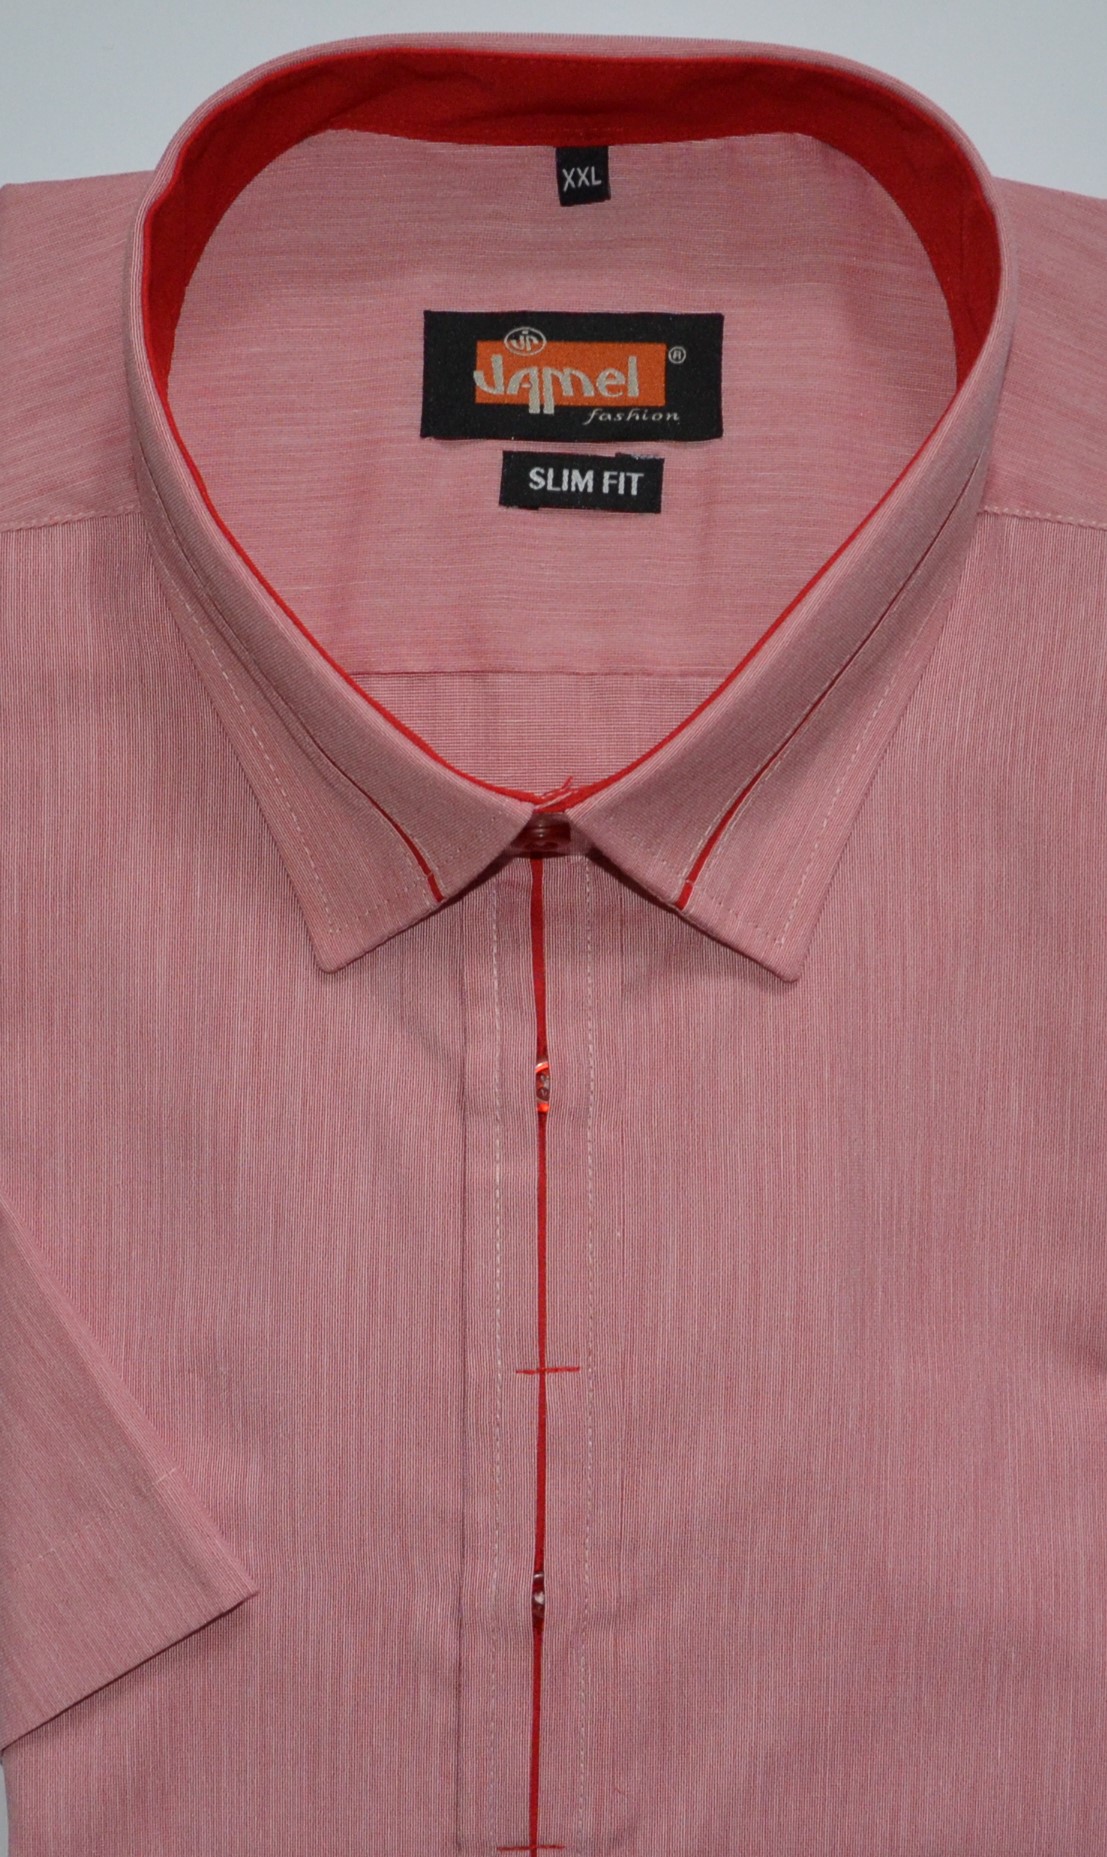 Pánská košile krátký rukáv Jamel Fashion 507 504/03 Slim Fit Velikost: 39-40 M